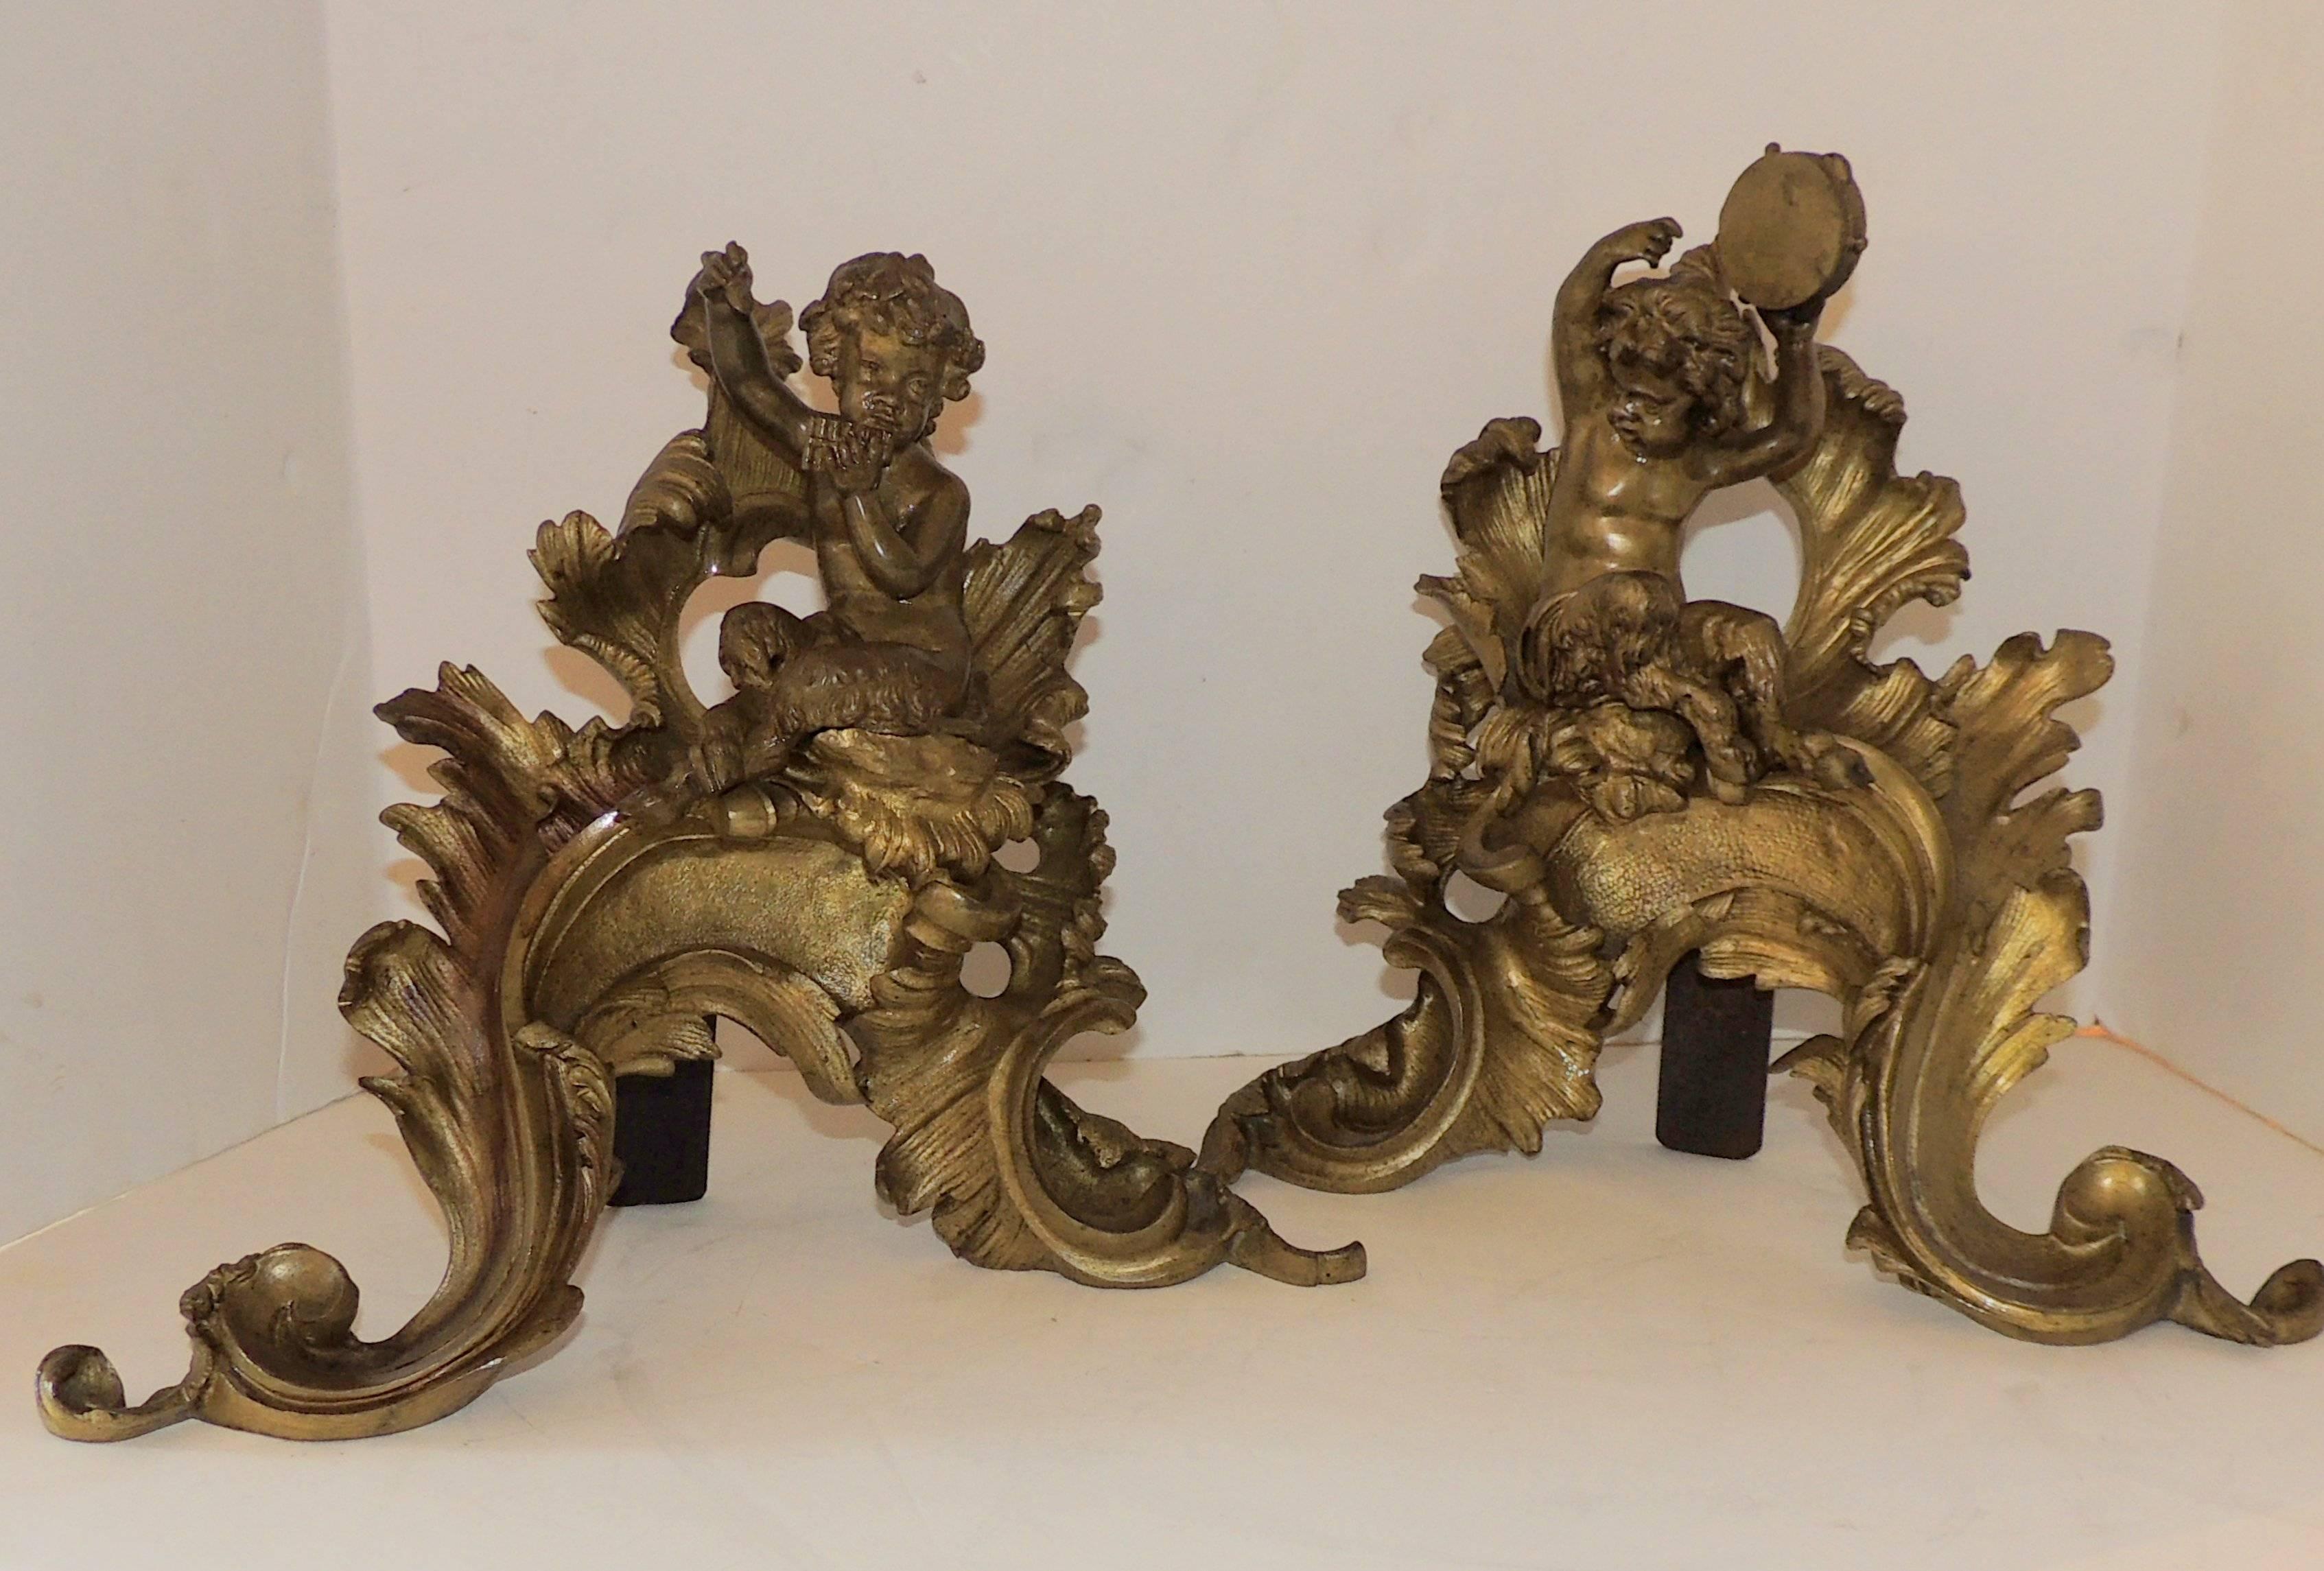 Merveilleux chérubin putti en bronze doré français pour cheminée, chenets et chenets d'ornement jouant des instruments de musique.

Mesures : 14